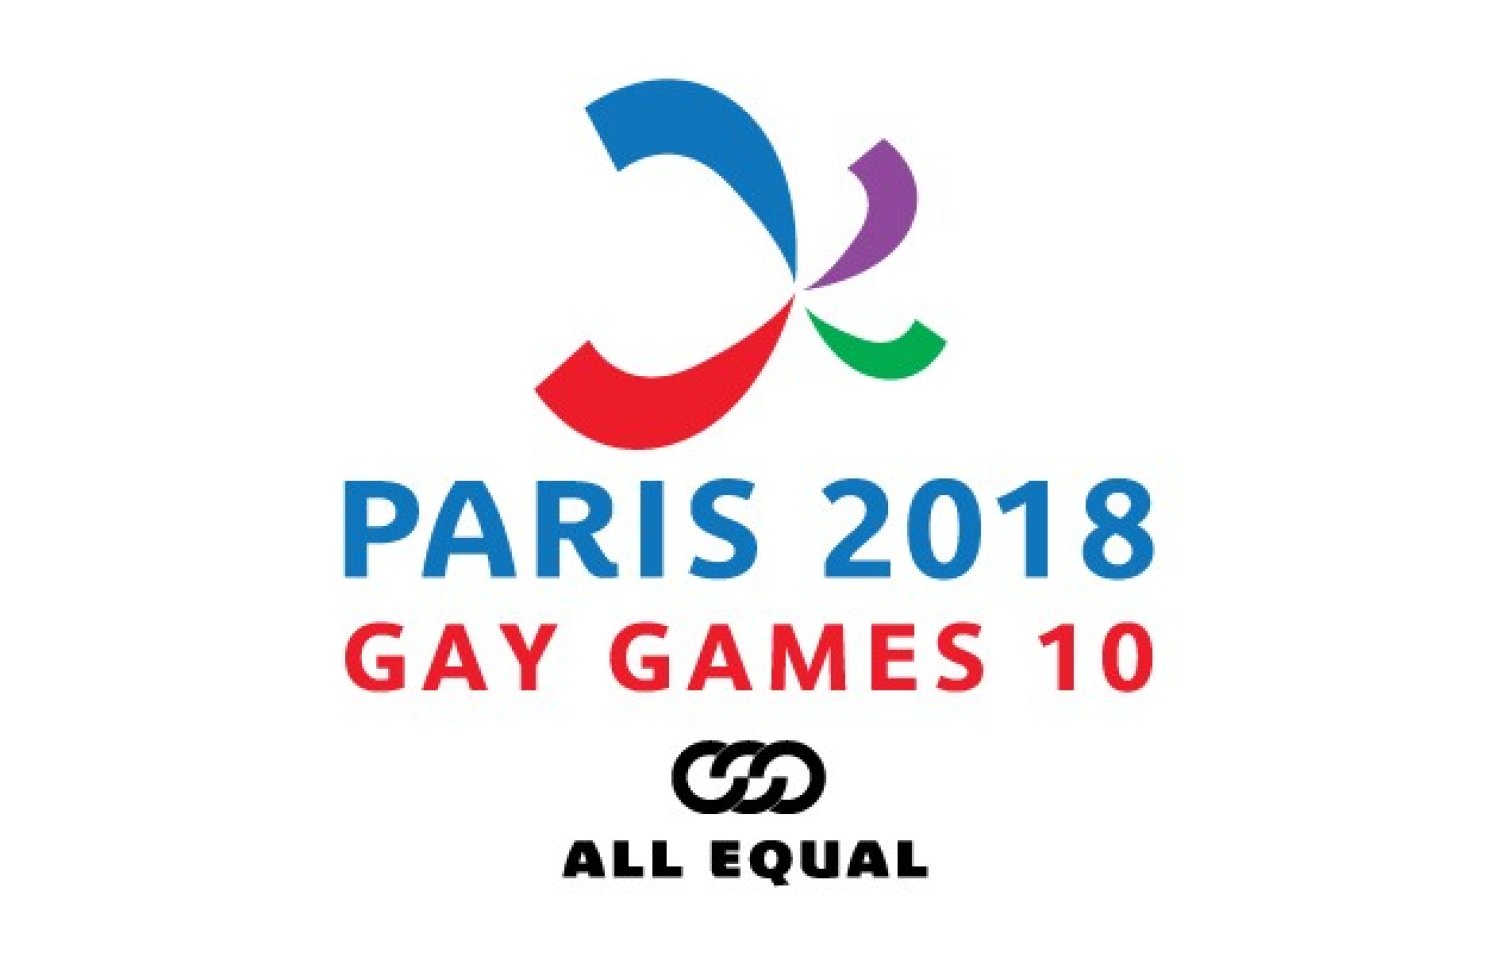 Les Gay Games 2018 à Paris